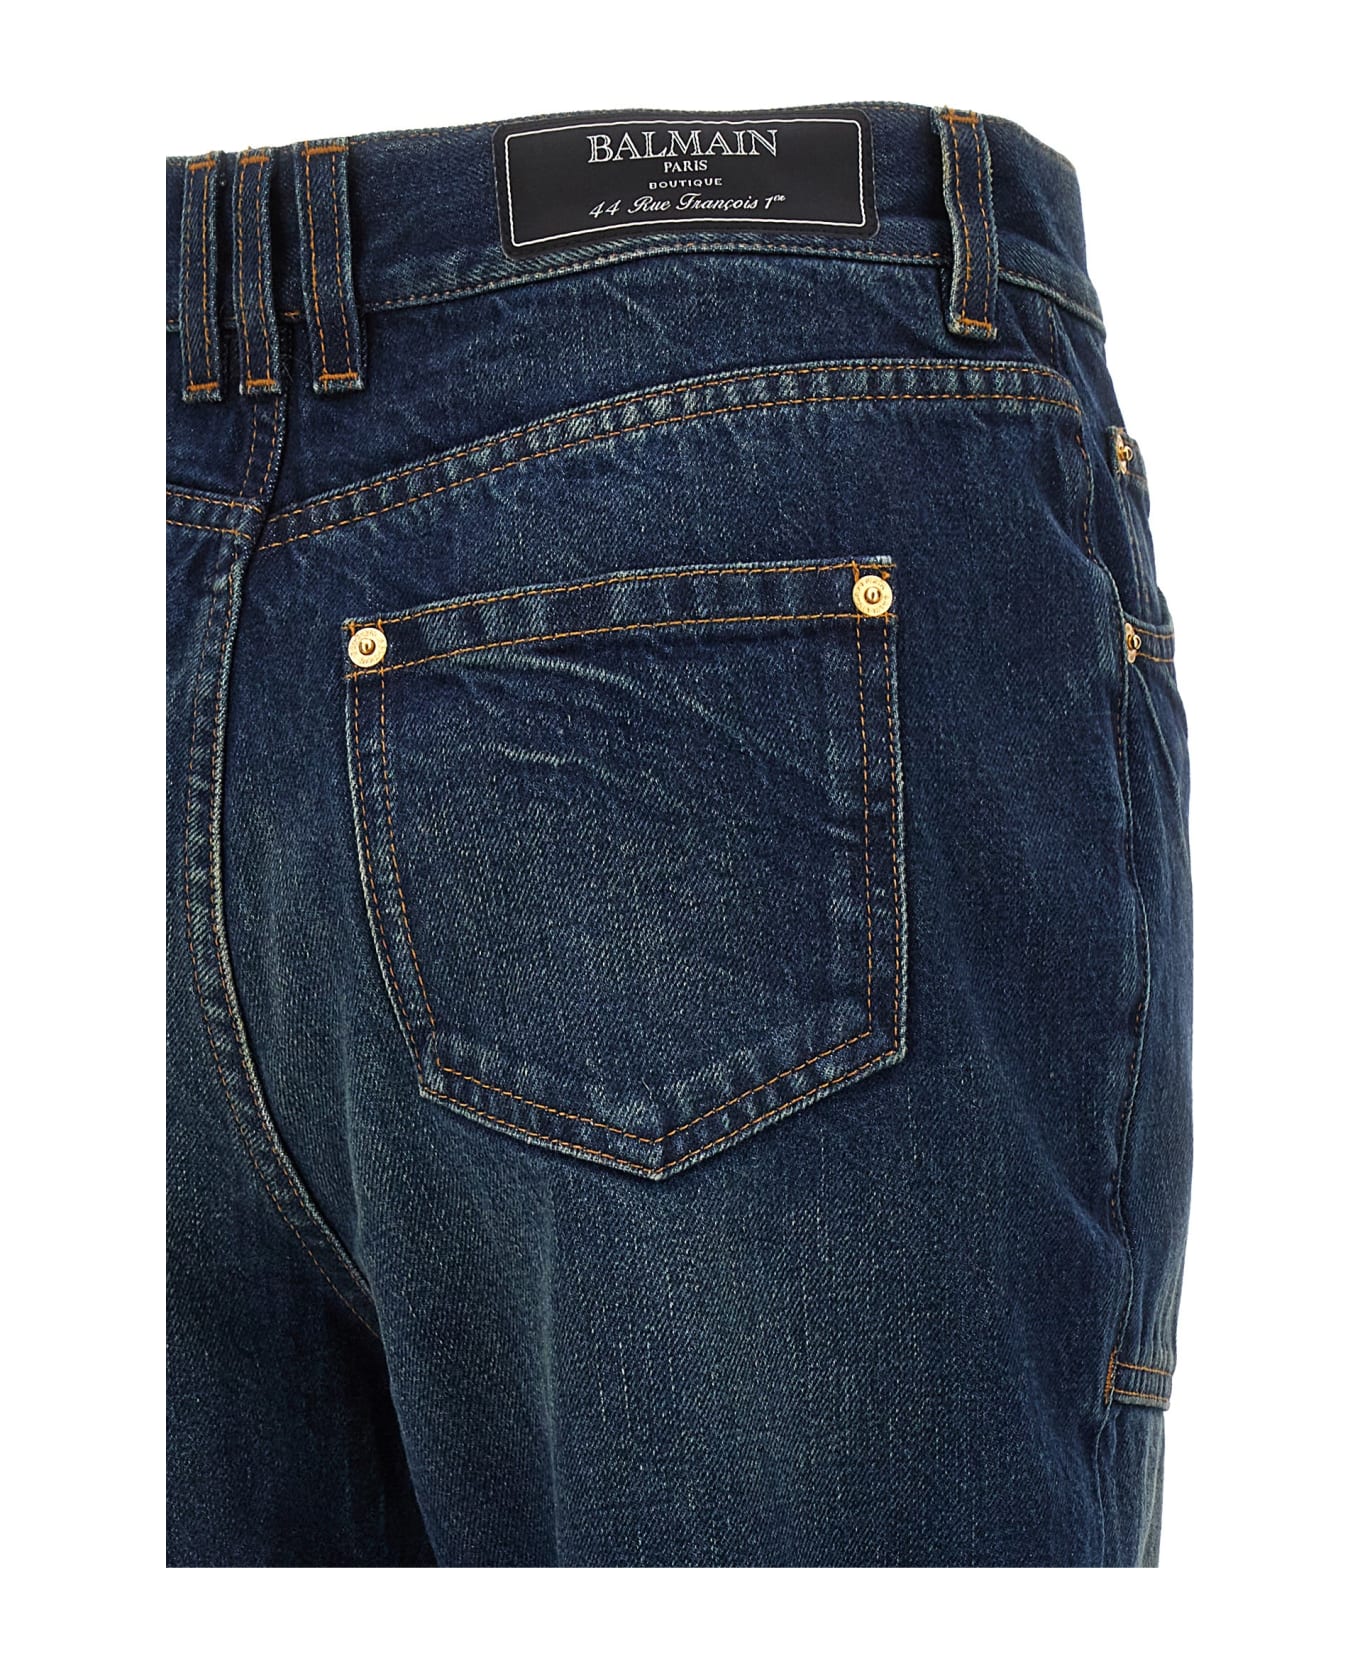 Balmain Vintage Bootcut Jeans - Bleu jean brut